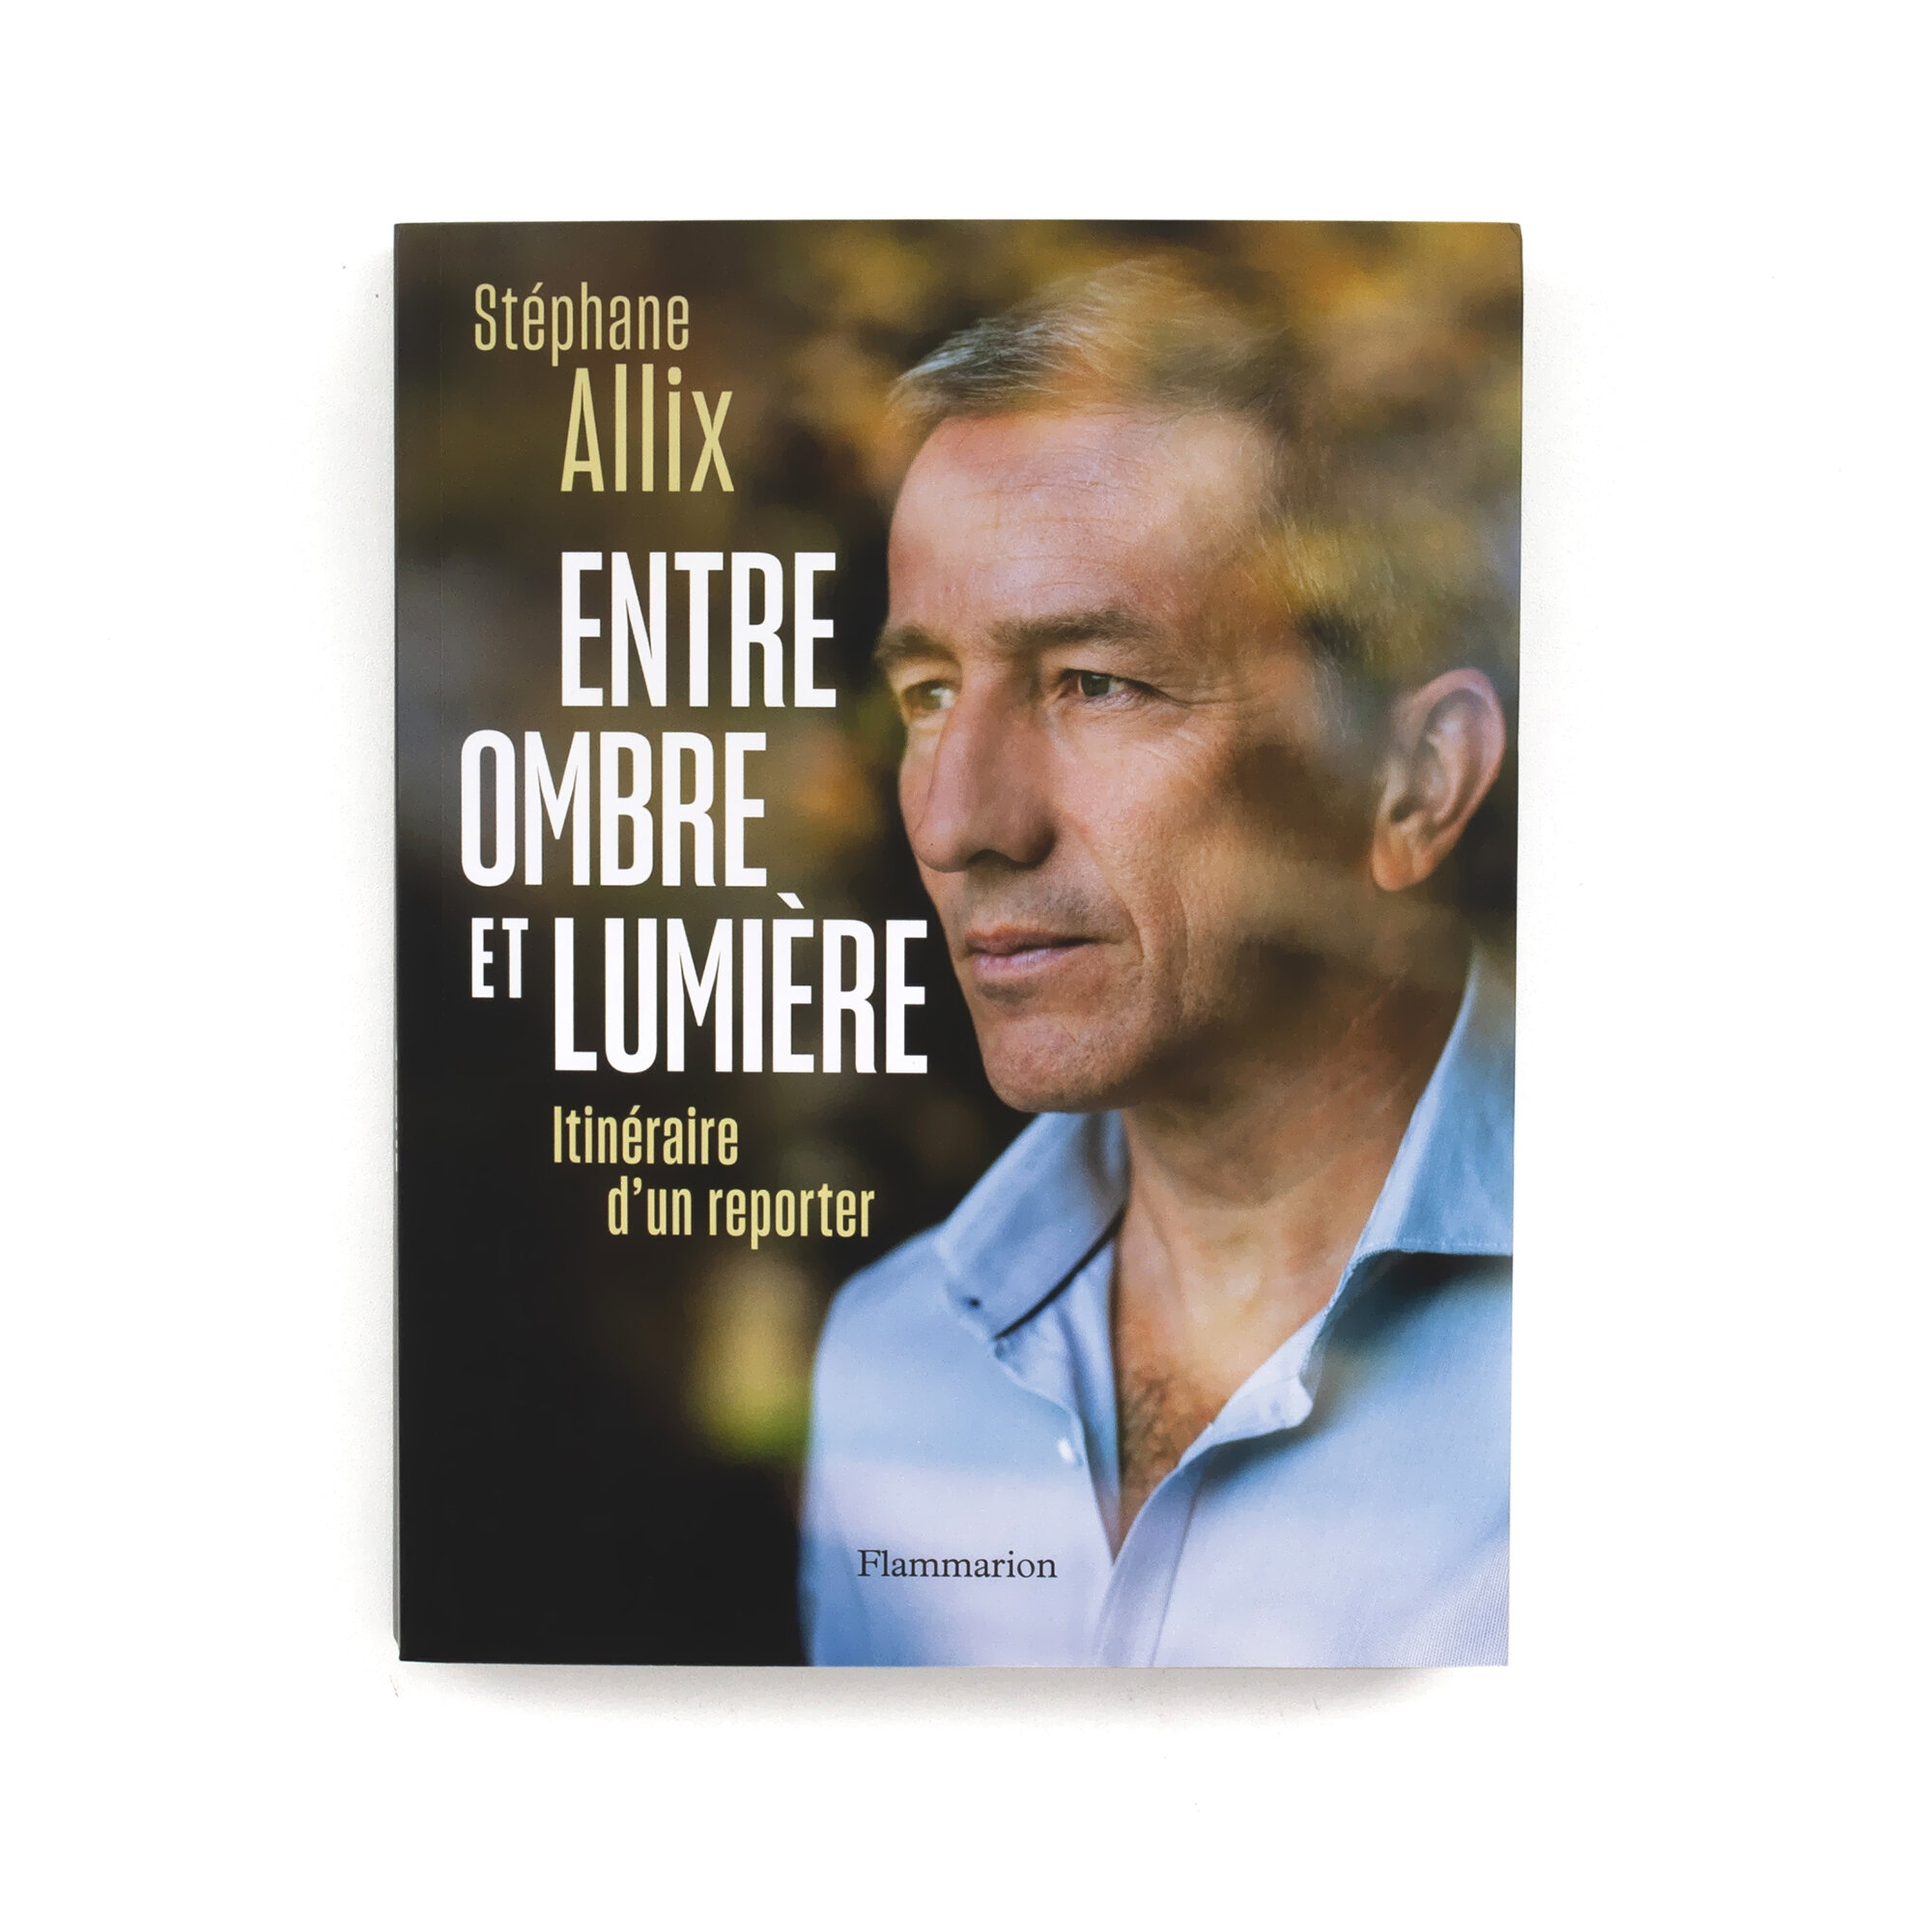   Entre ombre et lumière   Stéphane Allix   Itinéraire d’un reporter  Flammarion 320 pages 